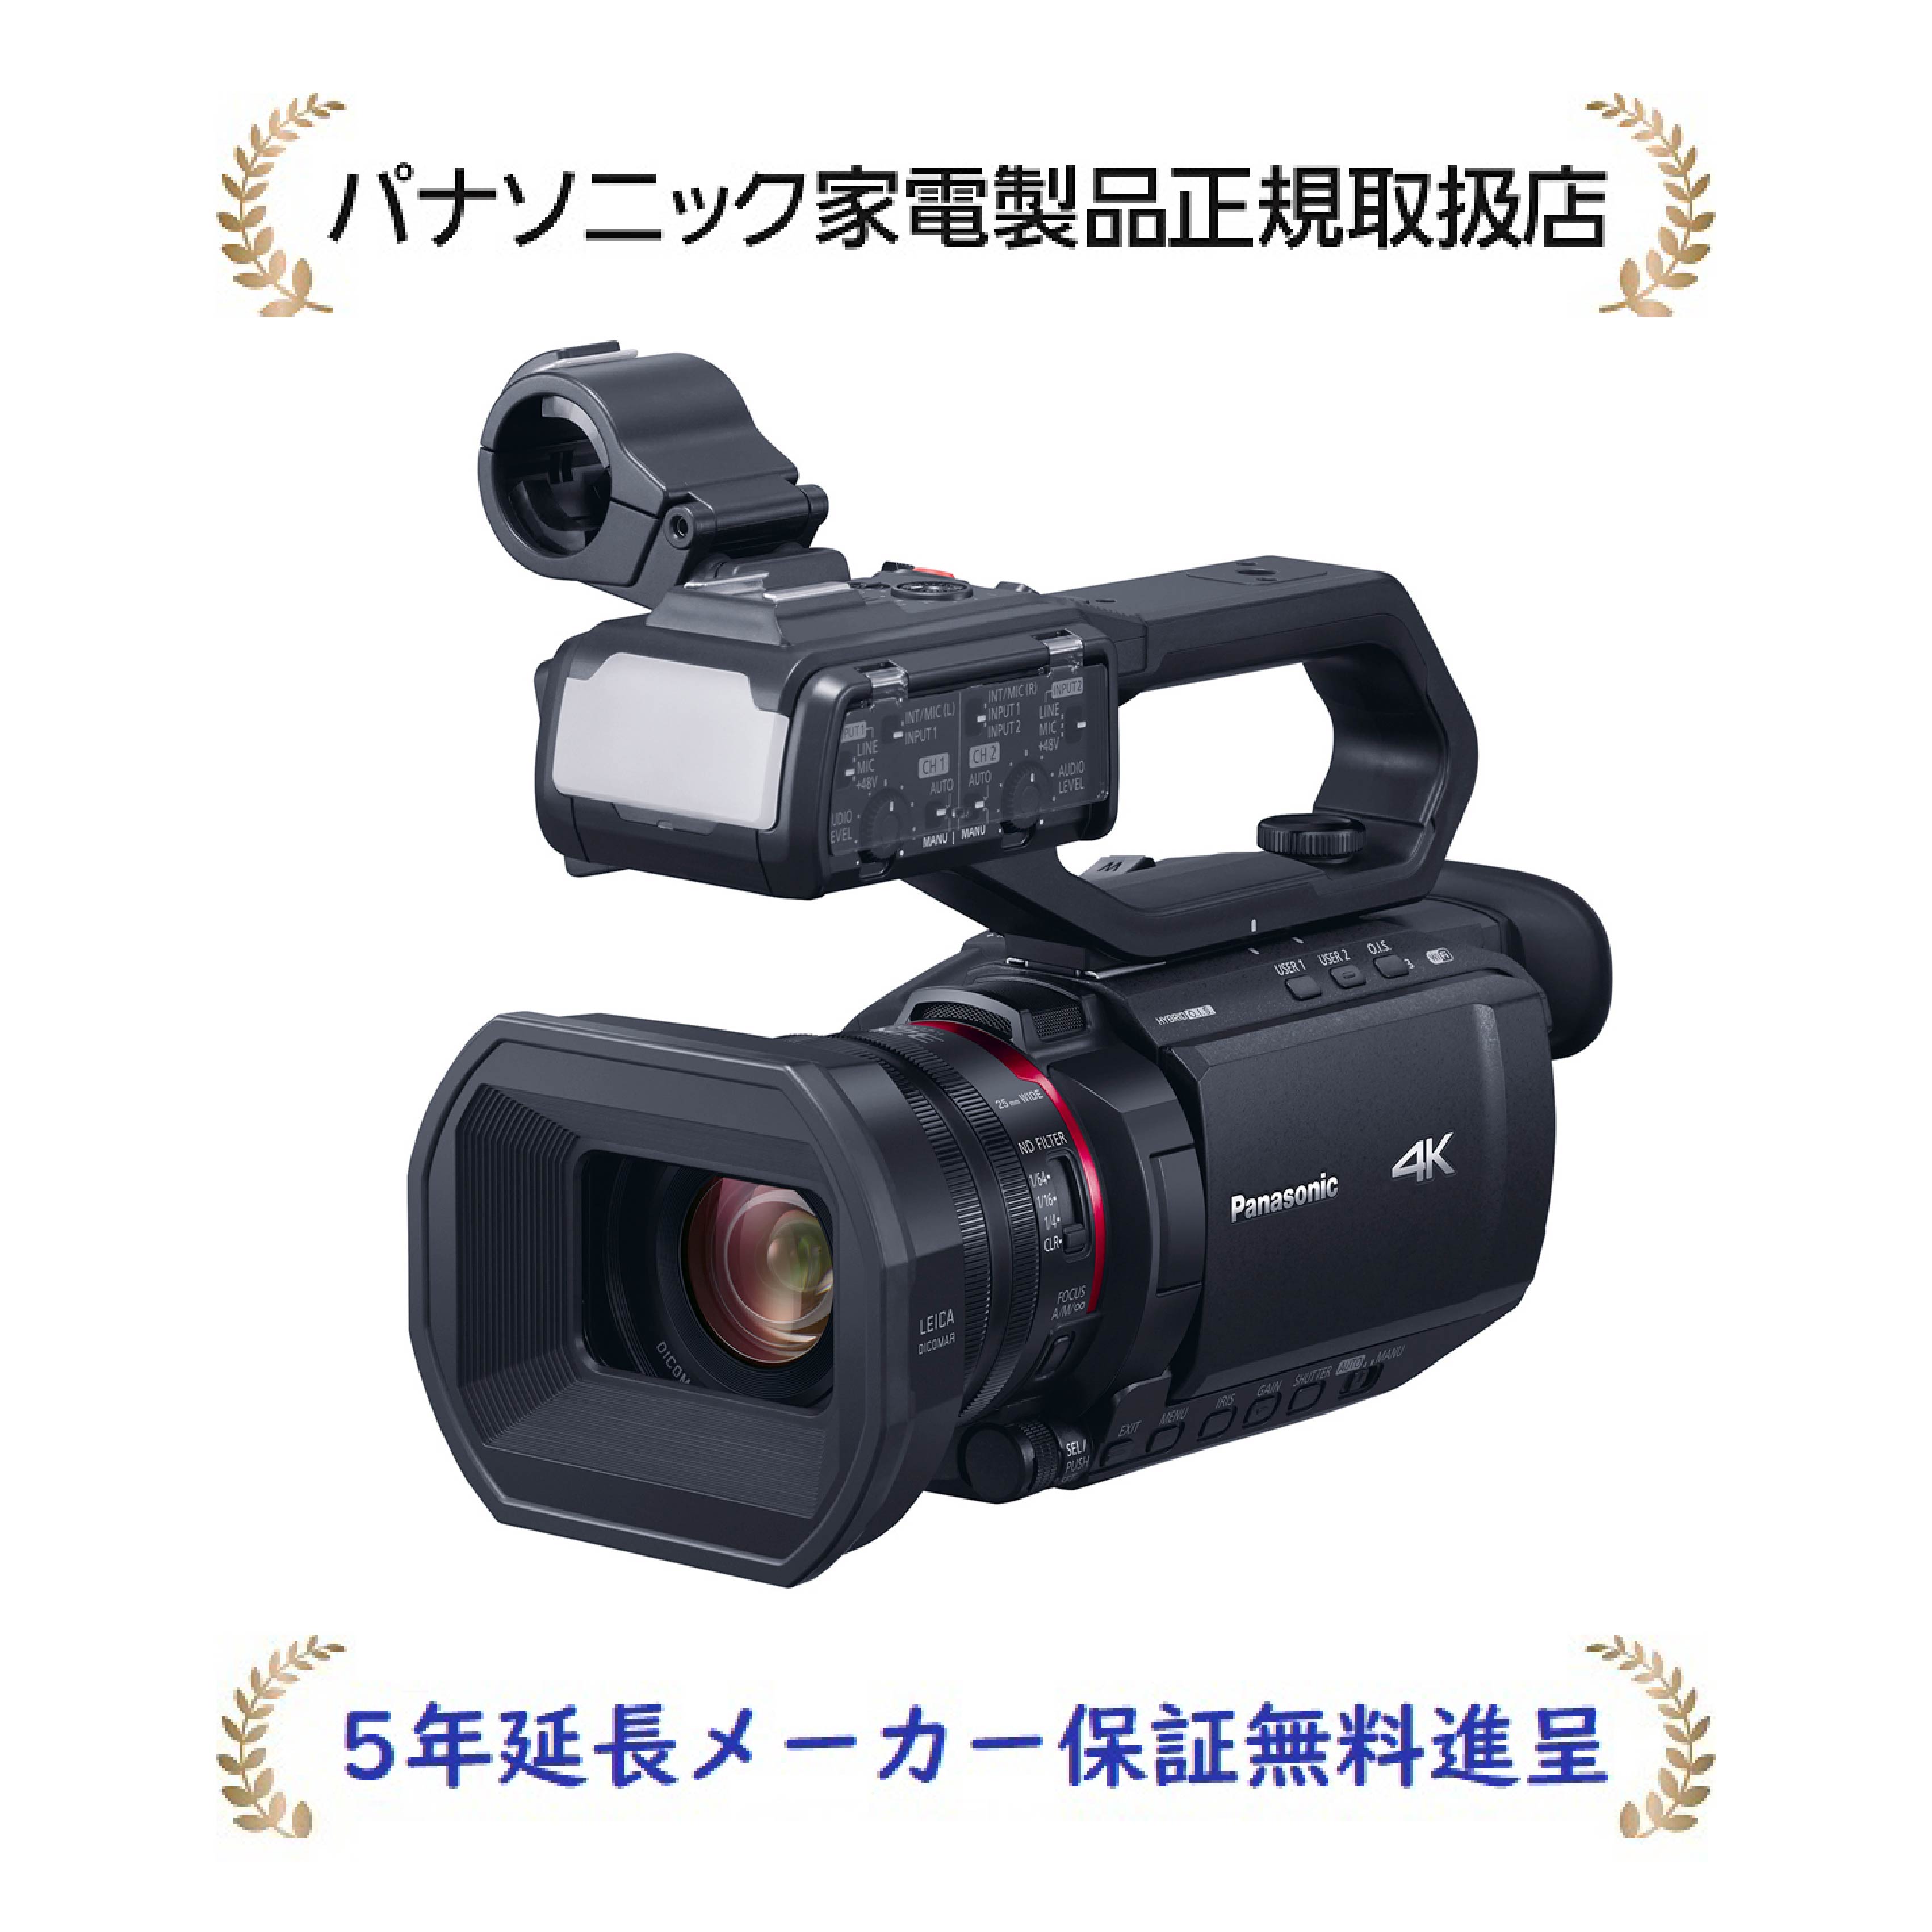 パナソニック HC-X2000-K[5年延長メーカー保証無料進呈](HCX2000K) デジタル4Kビデオカメラ